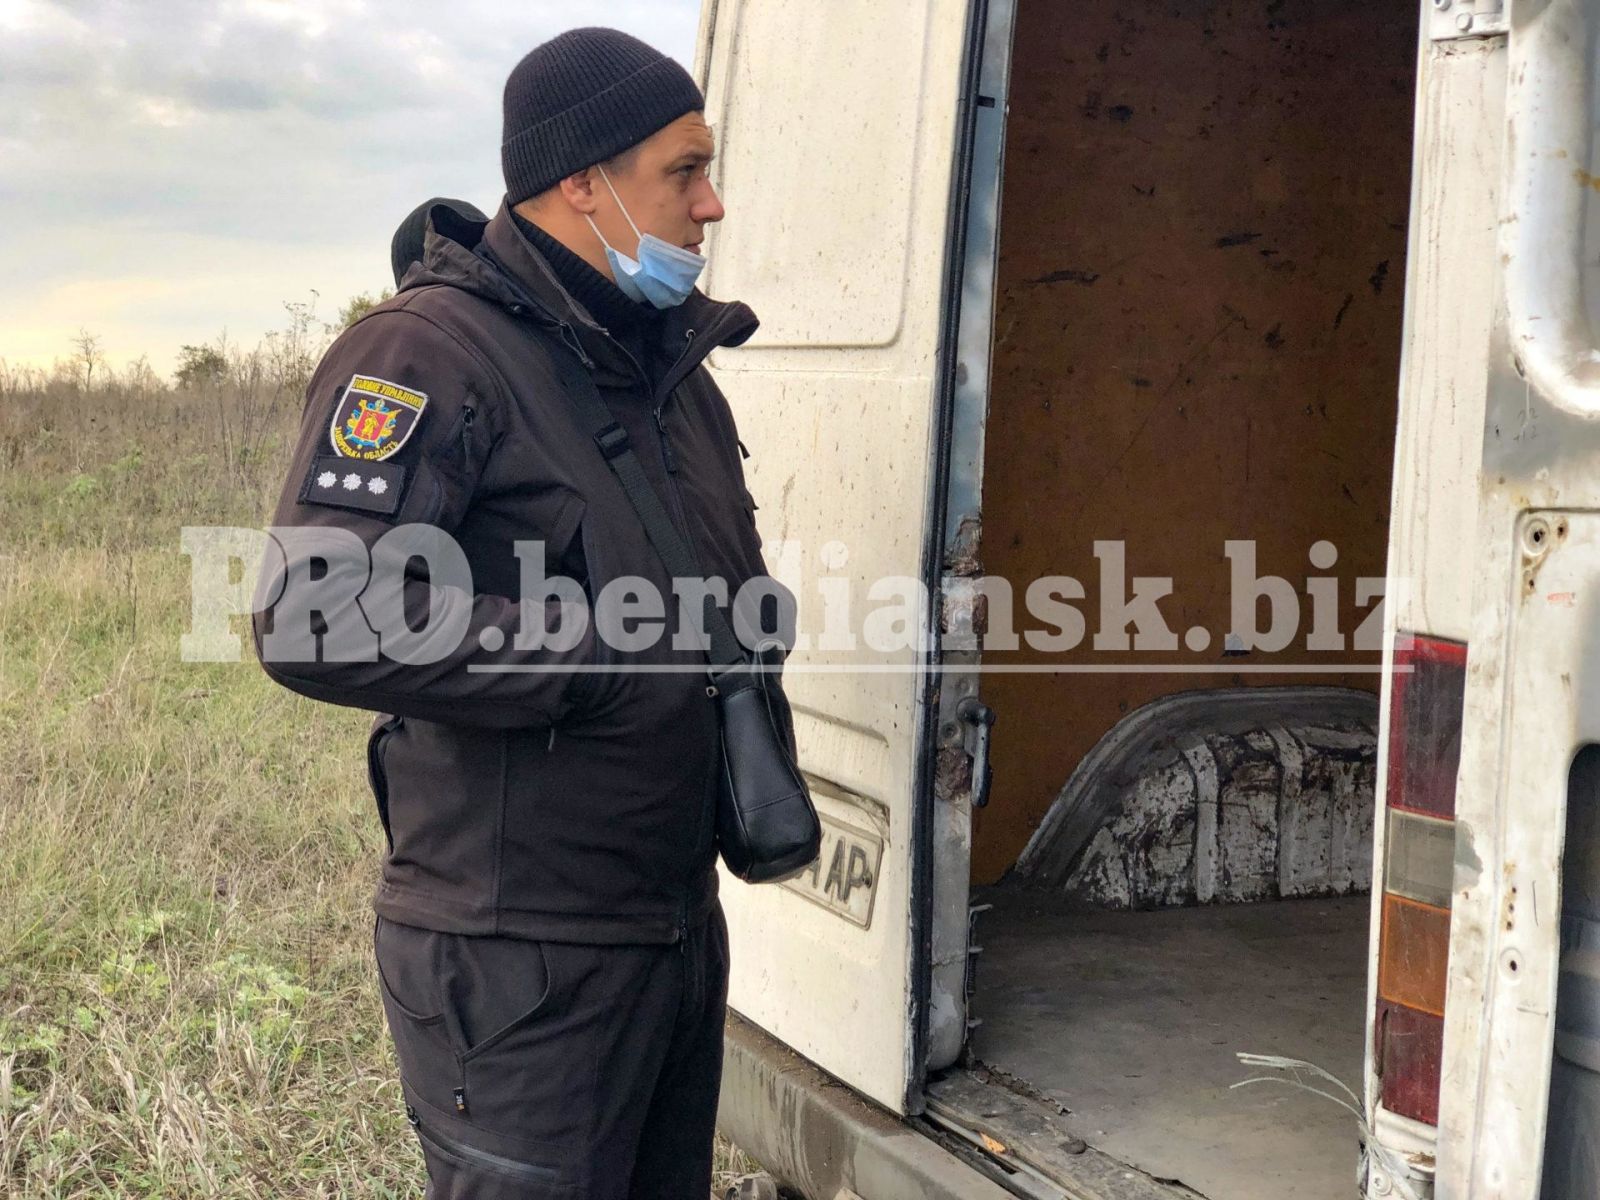 В Бердянске похитили автомобиль «Новой почты» вместе с посылками на 100 тысяч гривен